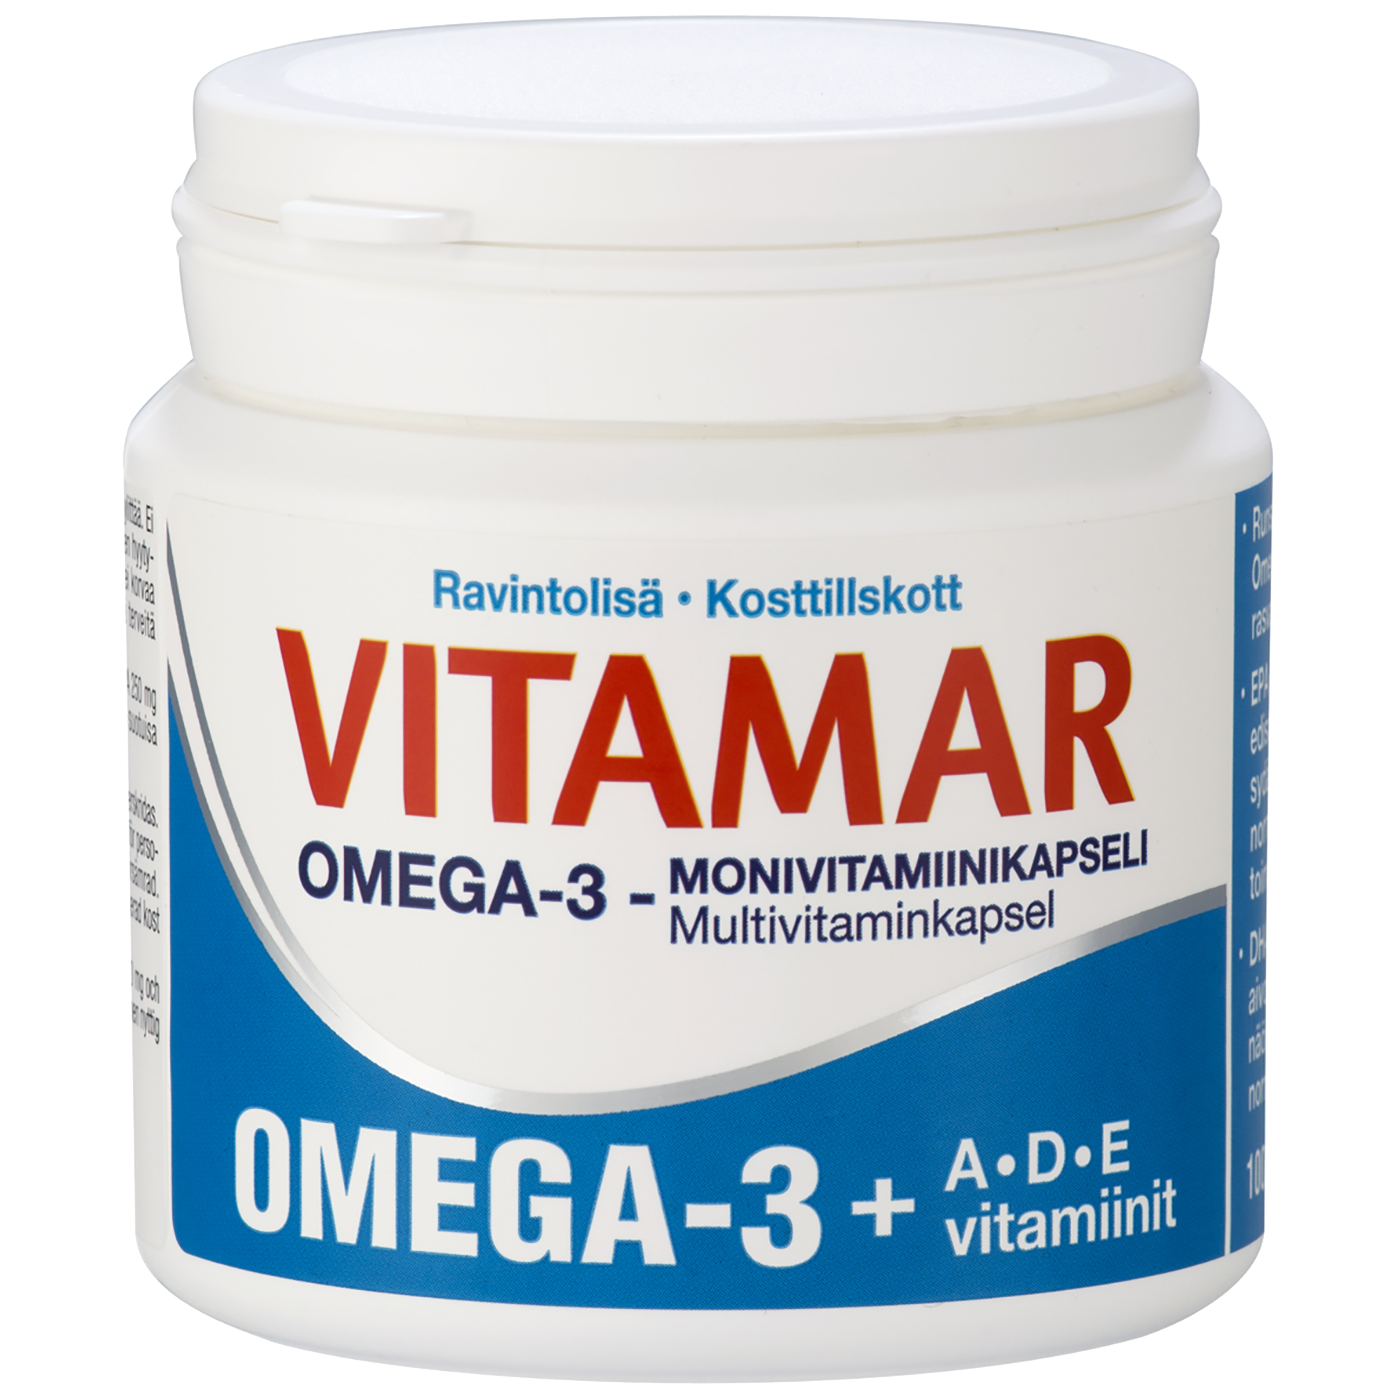 Омега-3 финские Vitamar. Vitamar 1000 Омега 3 из Финляндии. Vitamar Junior Omega 3. Omega 3 финские витамины. Multi longer